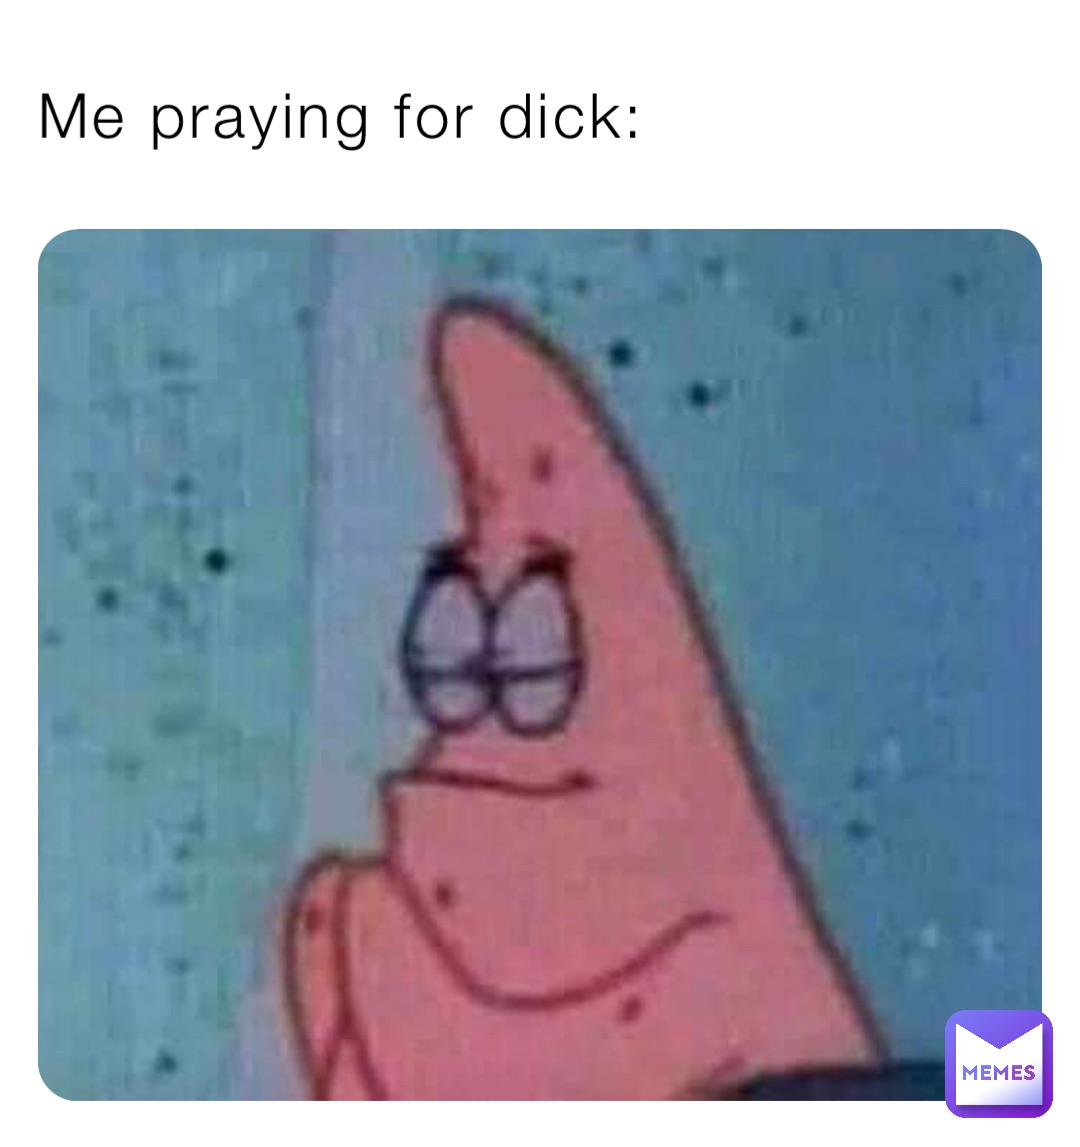 Me praying for dick: